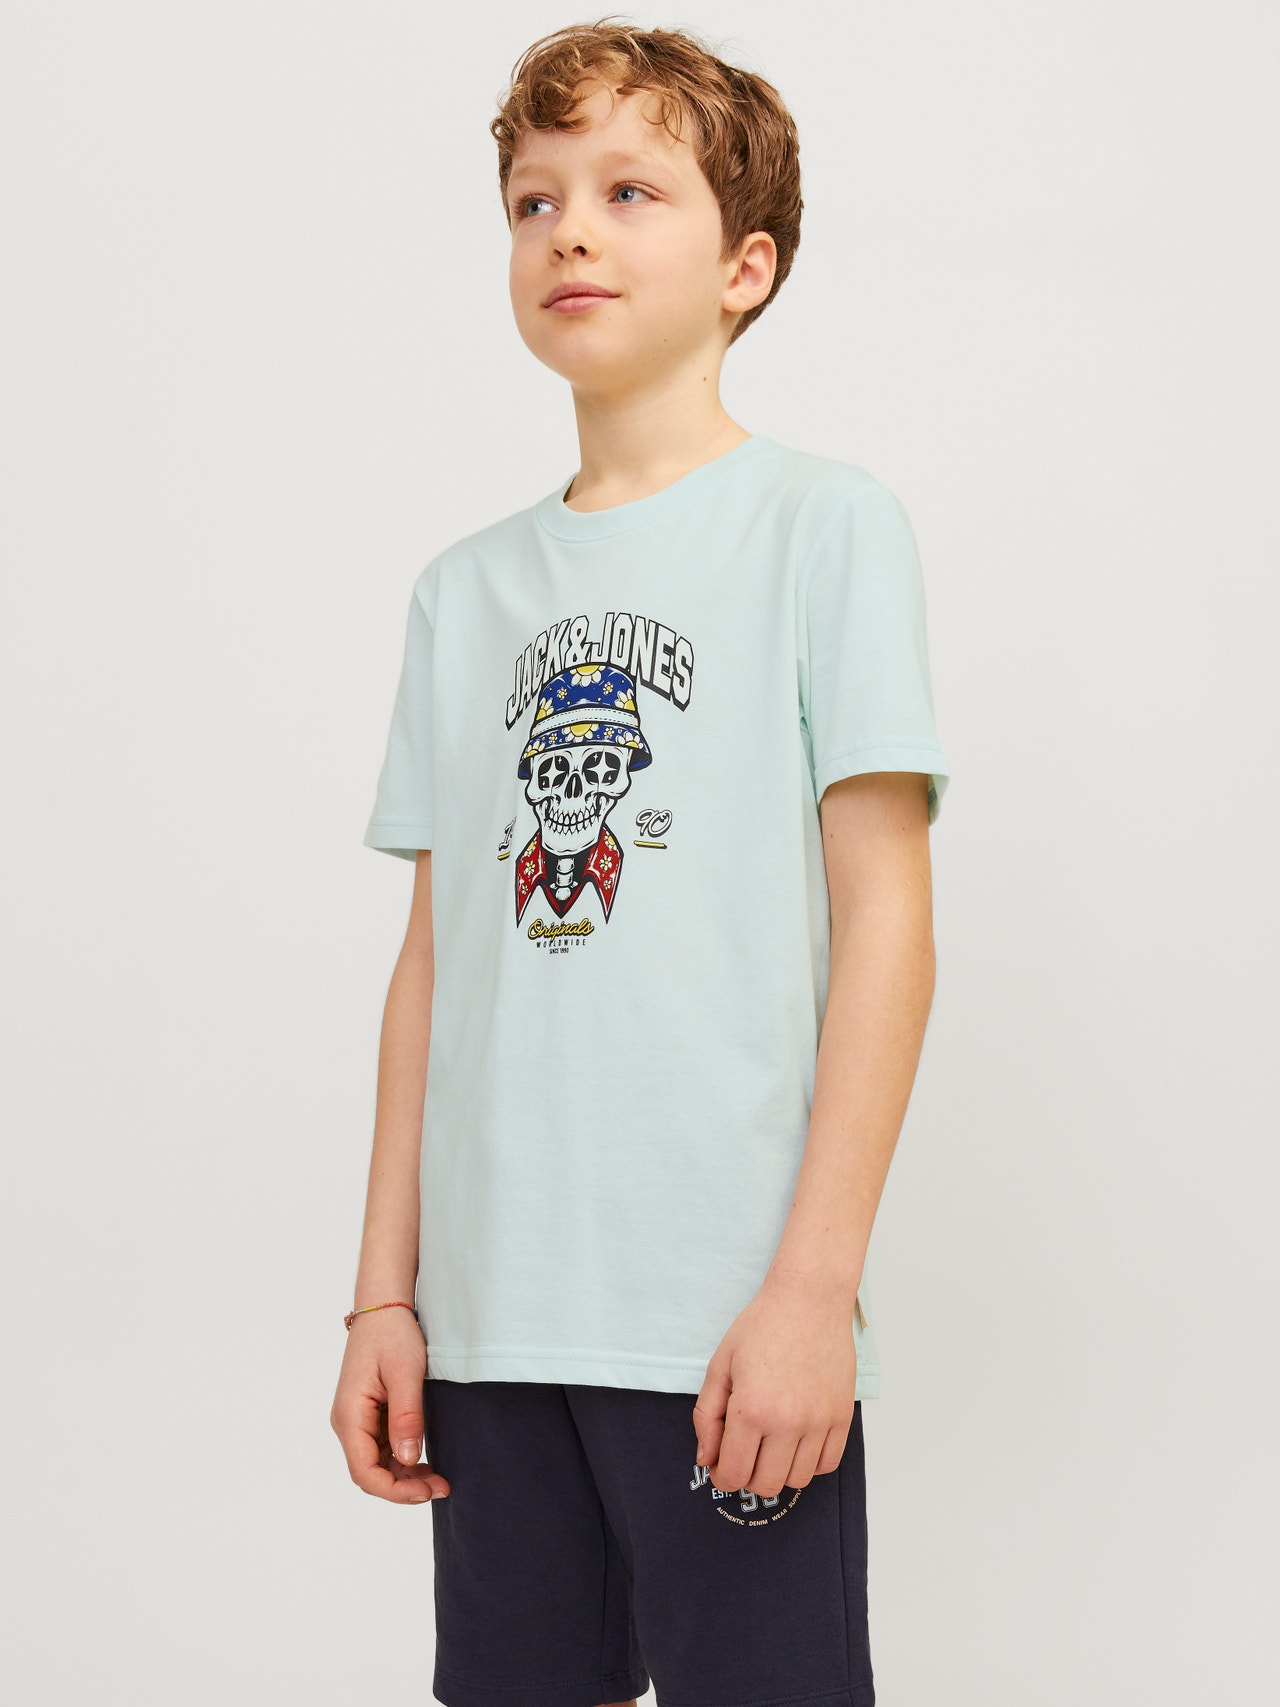 Jack & Jones Camiseta Estampado Para chicos -Skylight - 12257131